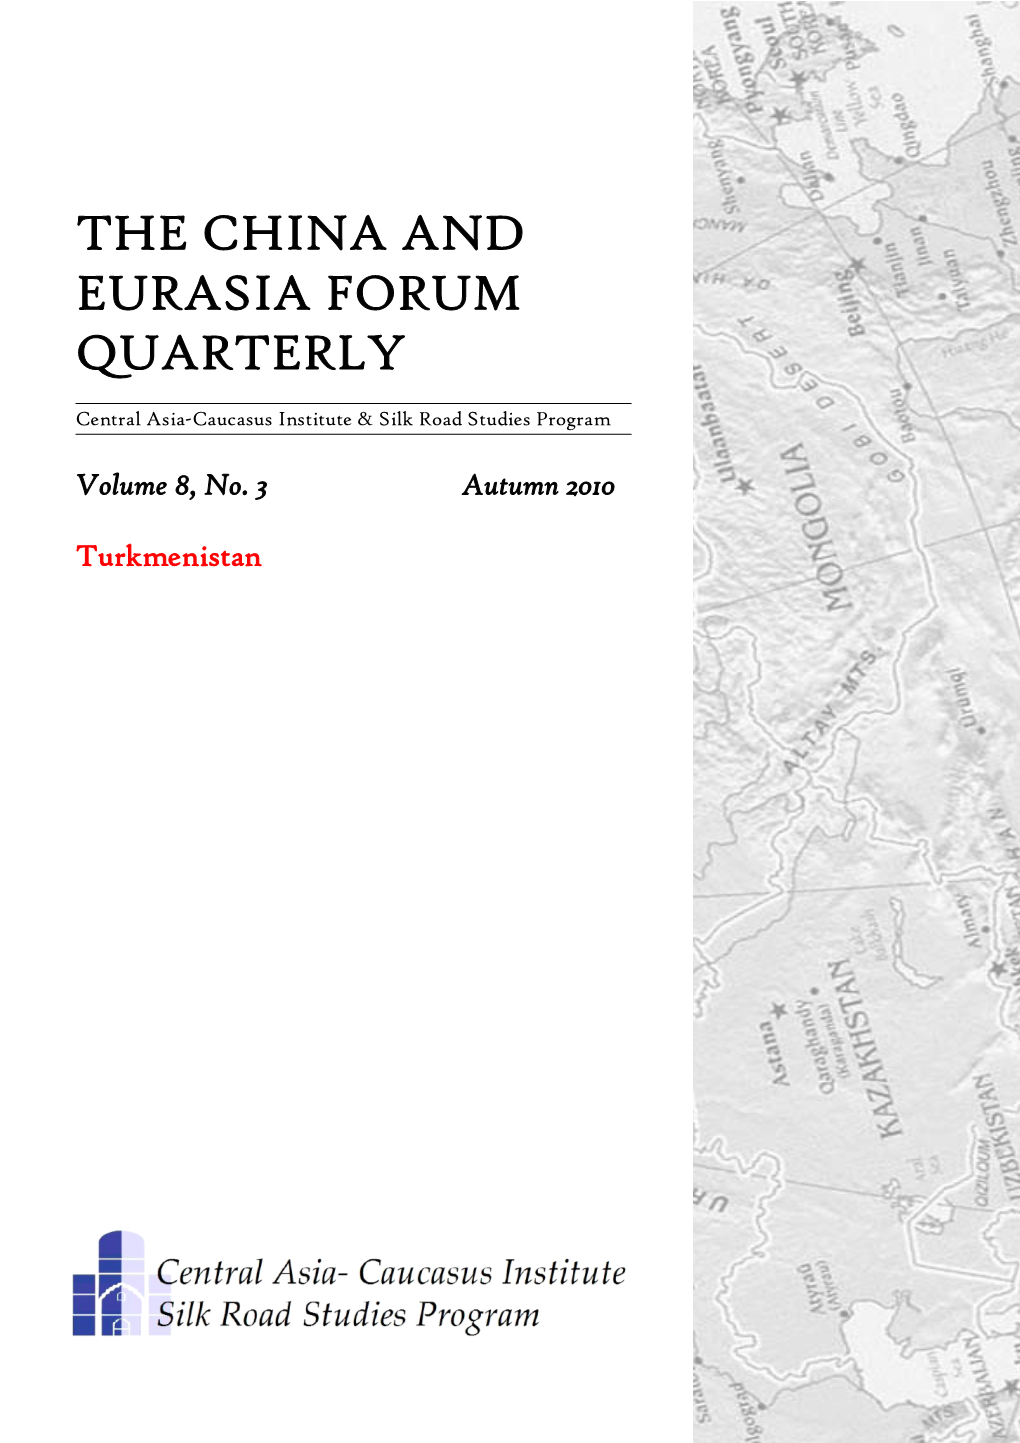 The China and Eurasia Forum Quarterly